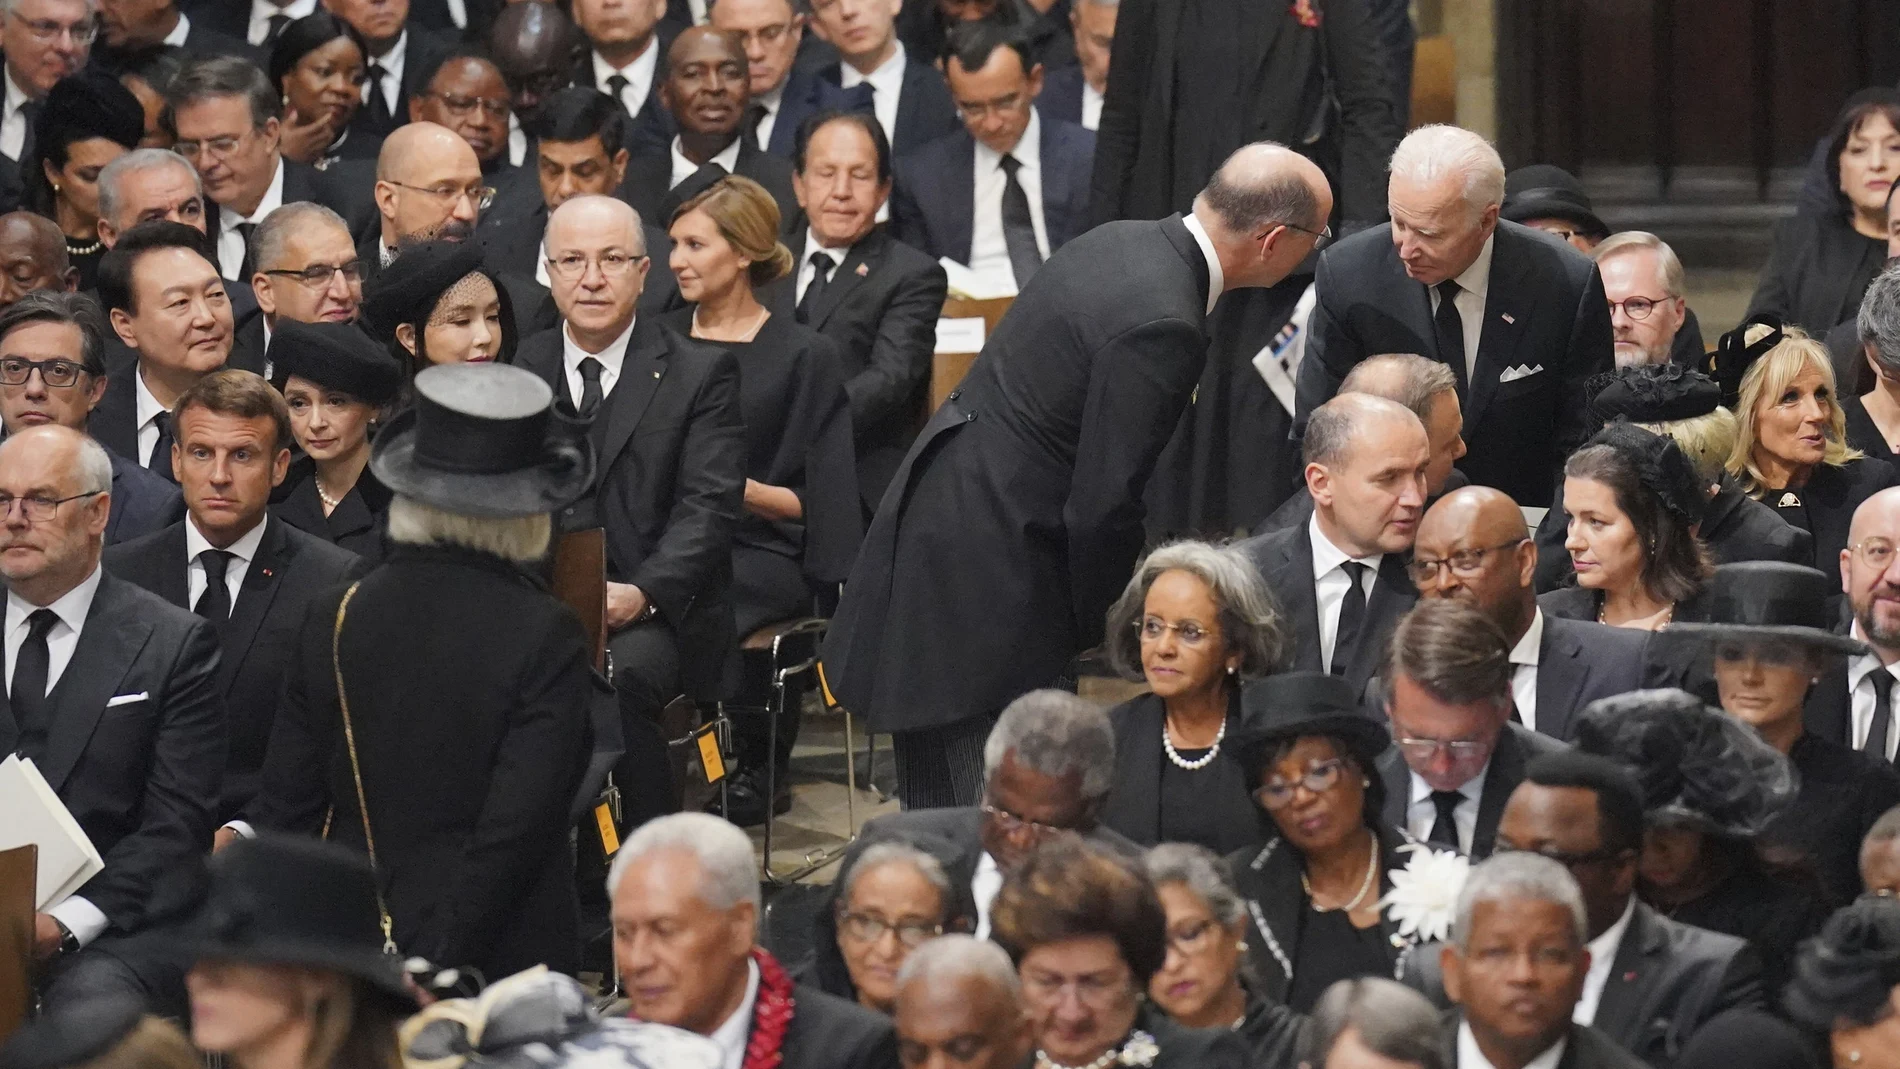 El presidente Joe Biden, a la derecha, toma asiento junto a su mujer a su llegada a la Abadía de Westminster